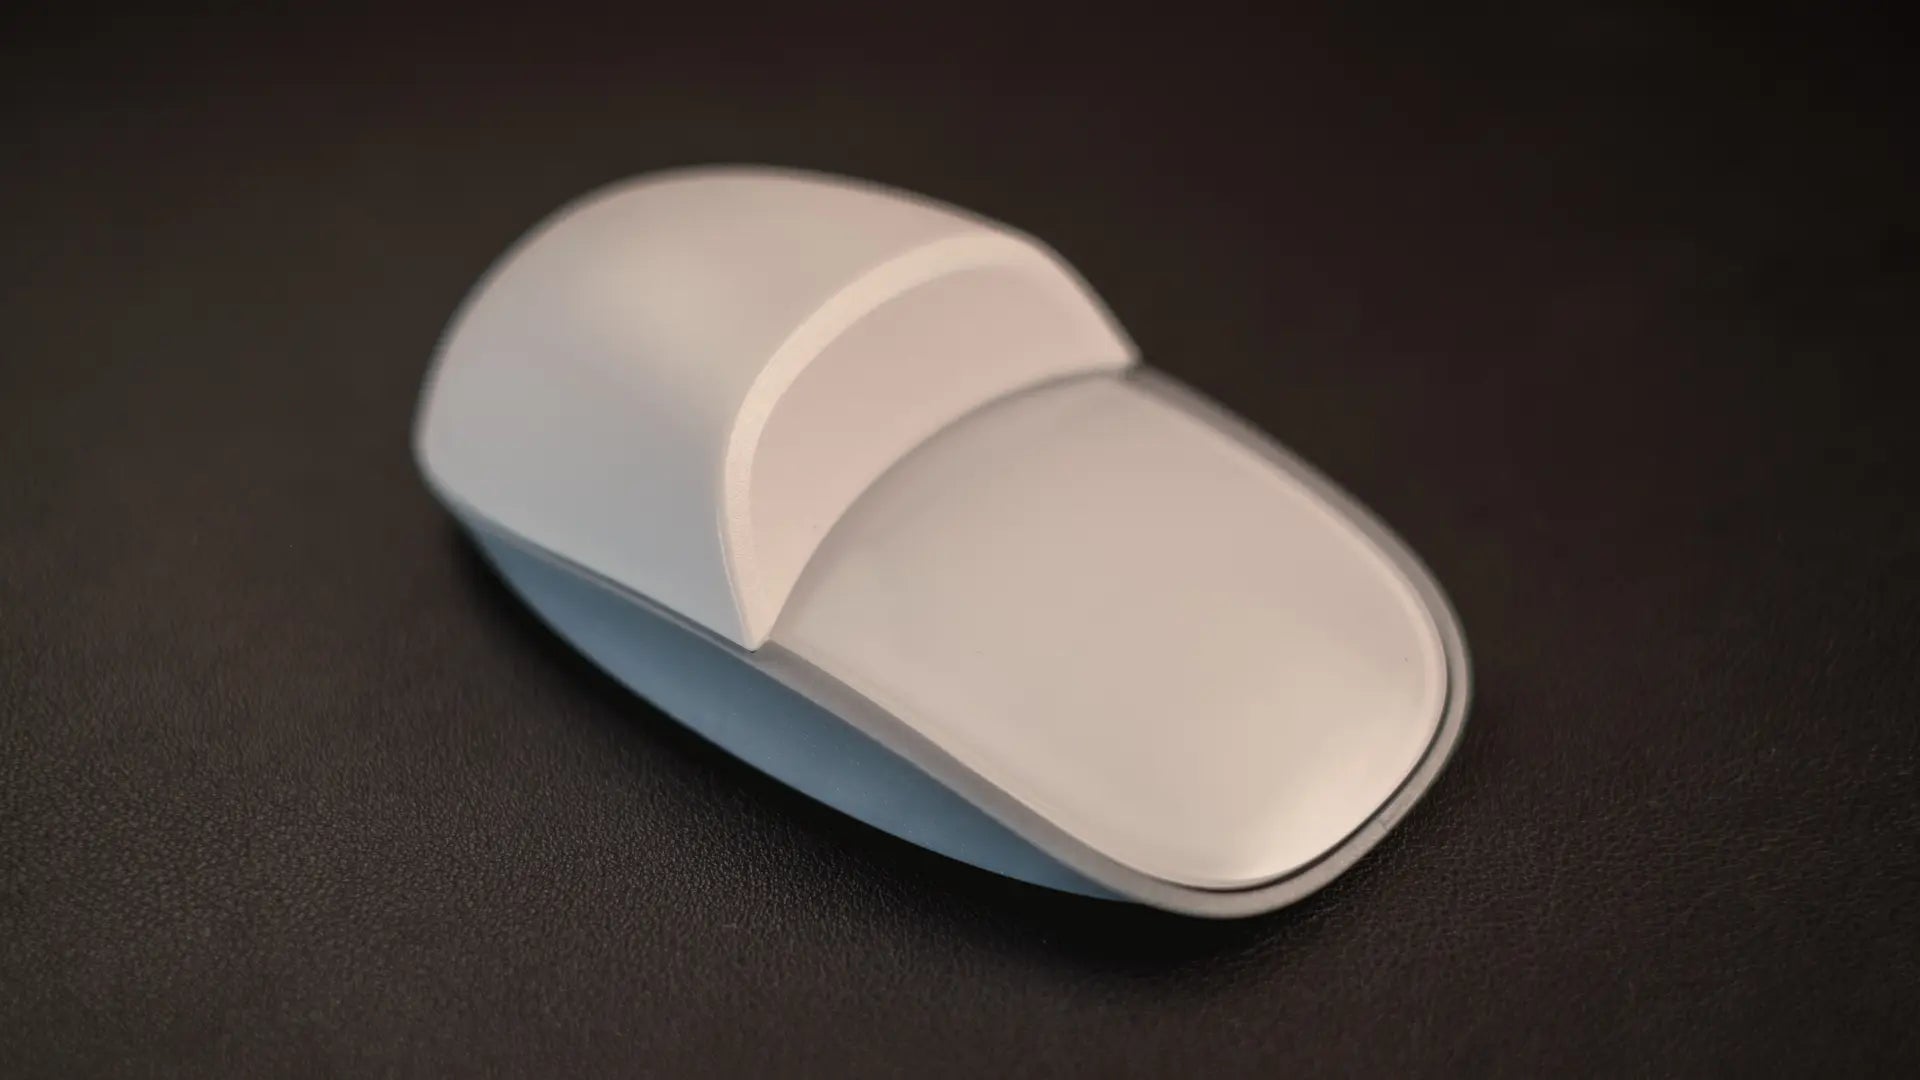 magic mouse ergonomic base